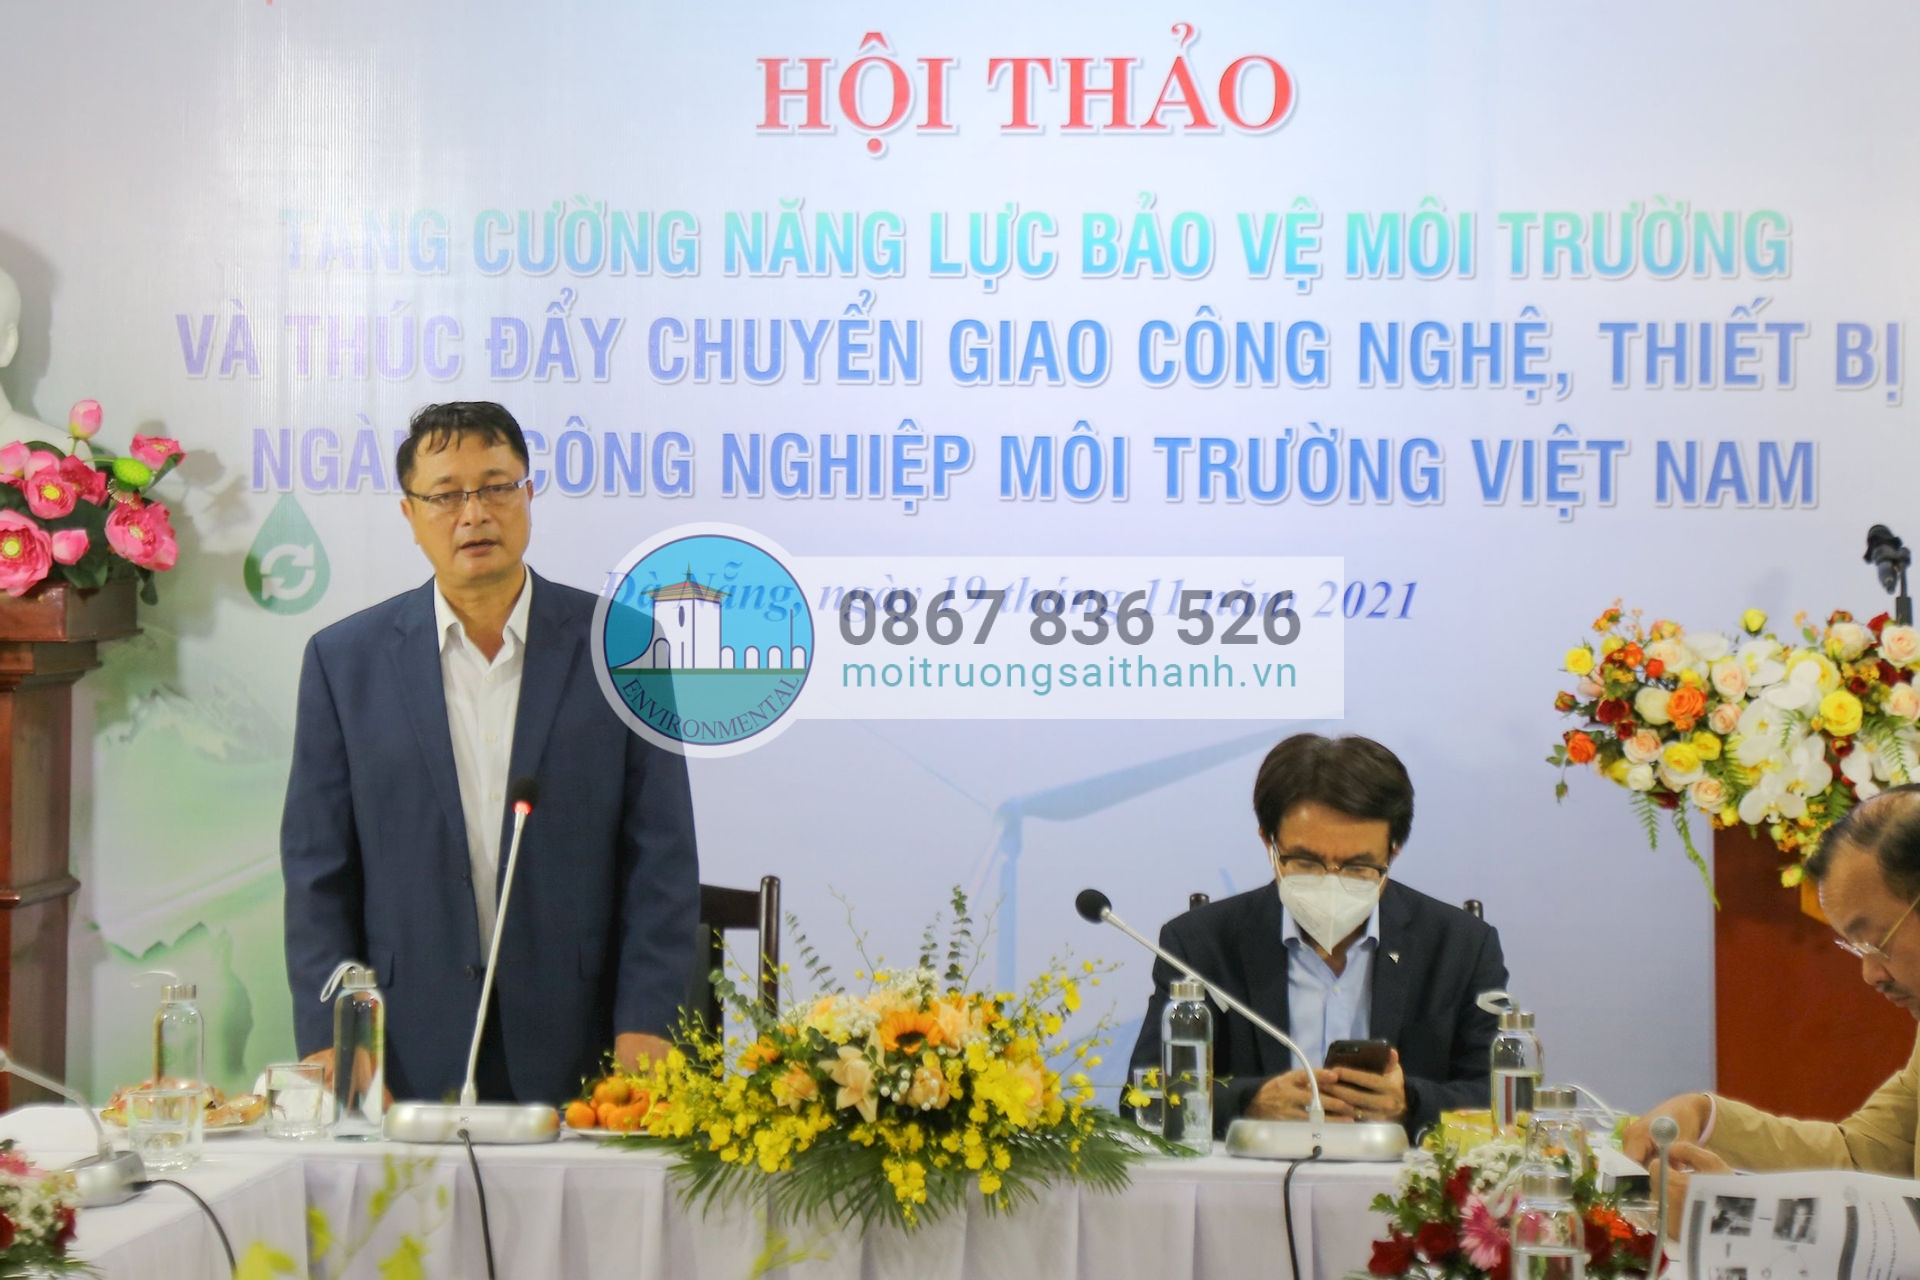 TS Trần Văn Lượng - Chủ tịch Hiệp hội Công nghiệp Môi trường Việt Nam phát biểu tại Hội thảo.